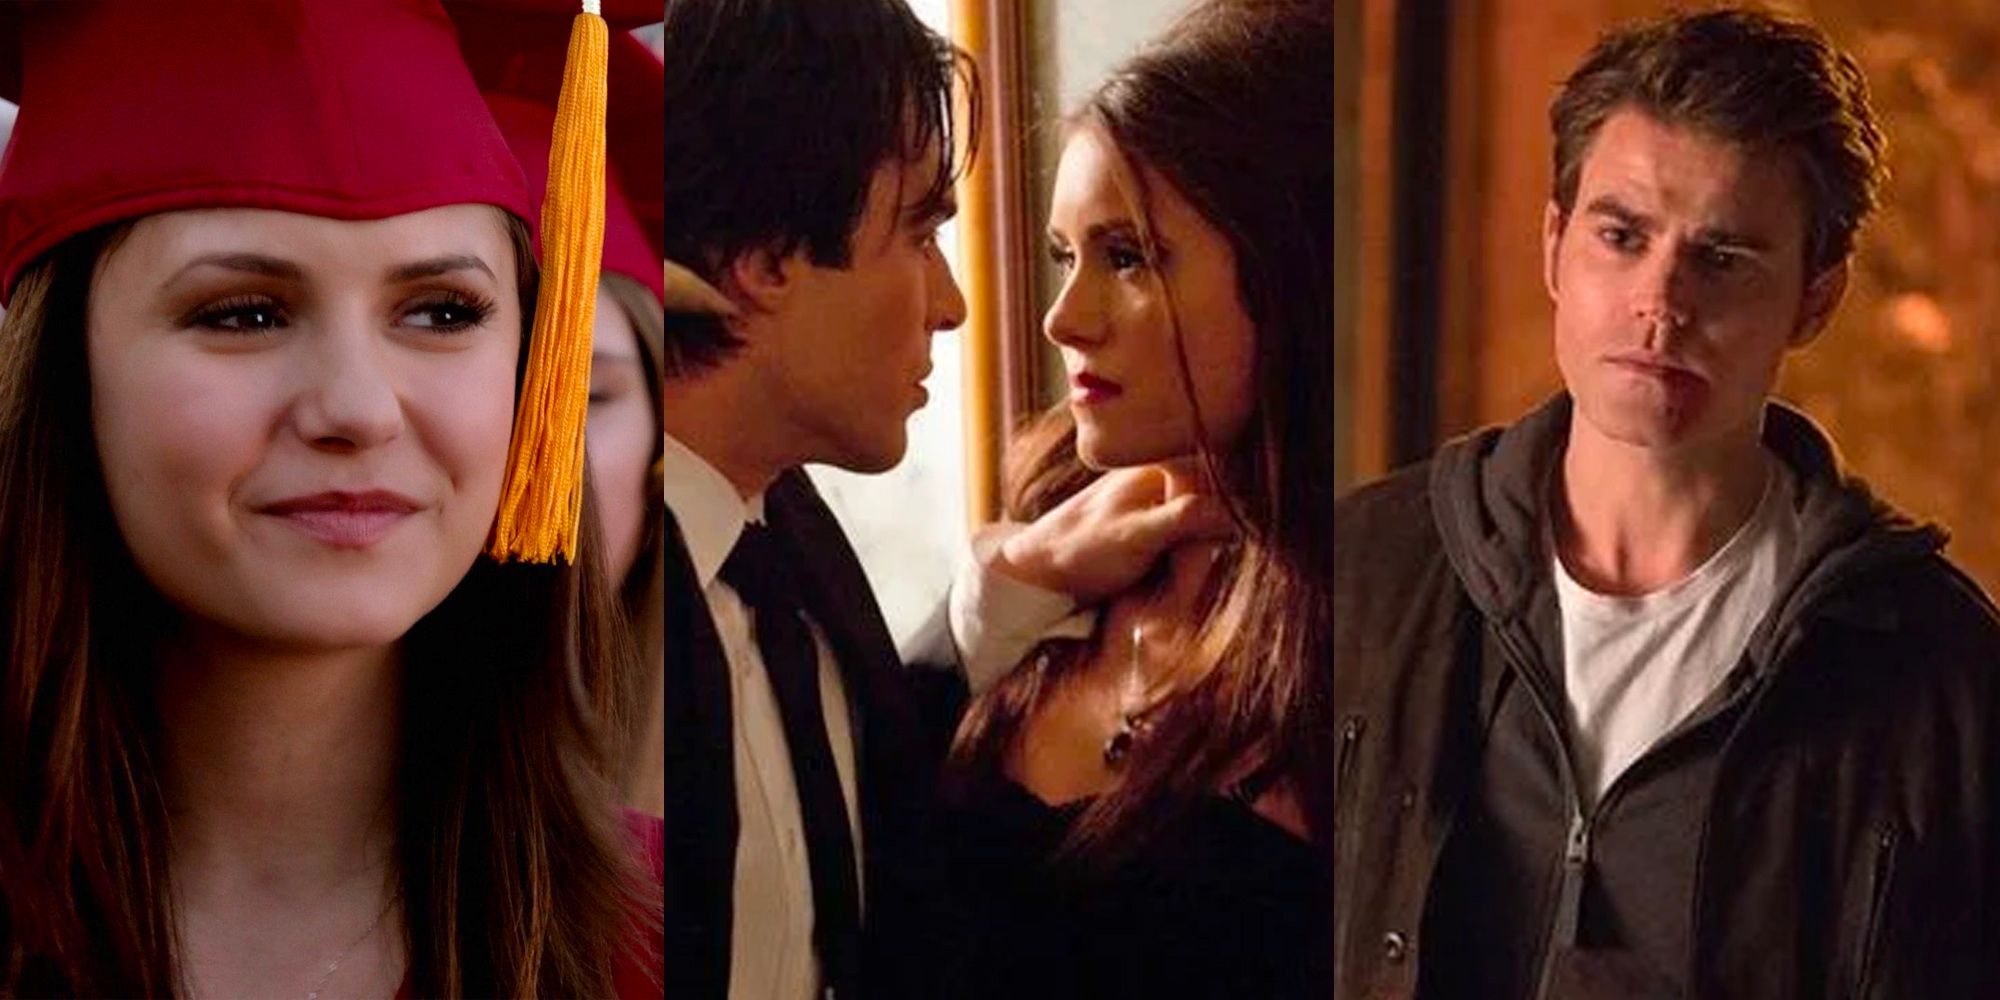 Gambar terpisah dari kelulusan Elena, Damon mengancam Katherine, dan Stefan melihat The Vampire Diaries